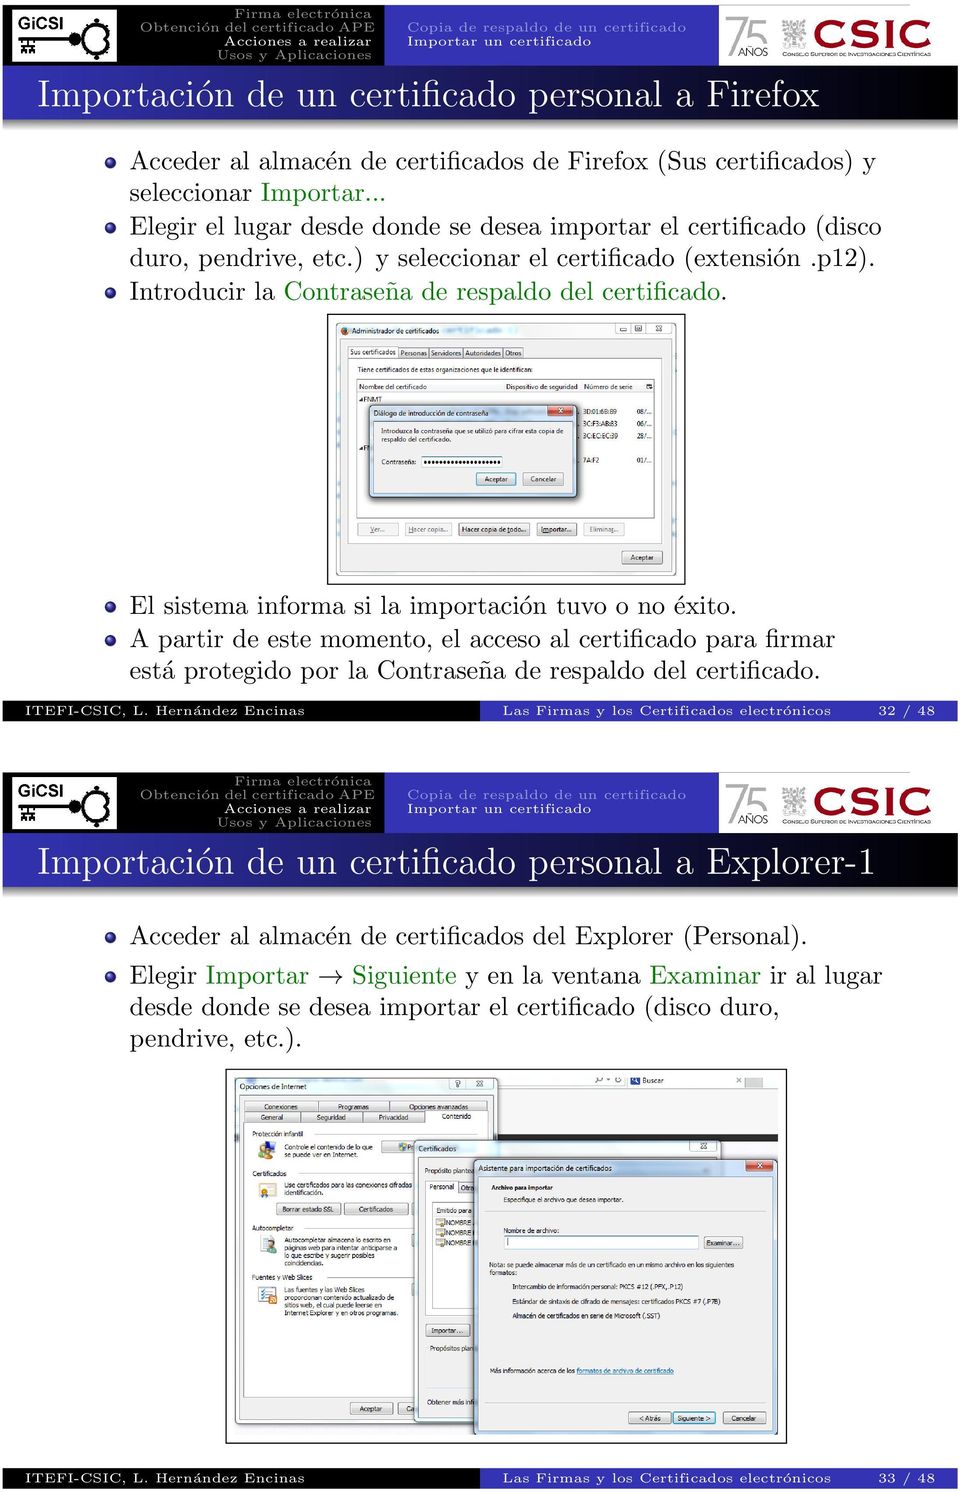 El sistema informa si la importación tuvo o no éxito. A partir de este momento, el acceso al certificado para firmar está protegido por la Contraseña de respaldo del certificado. ITEFI-CSIC, L.